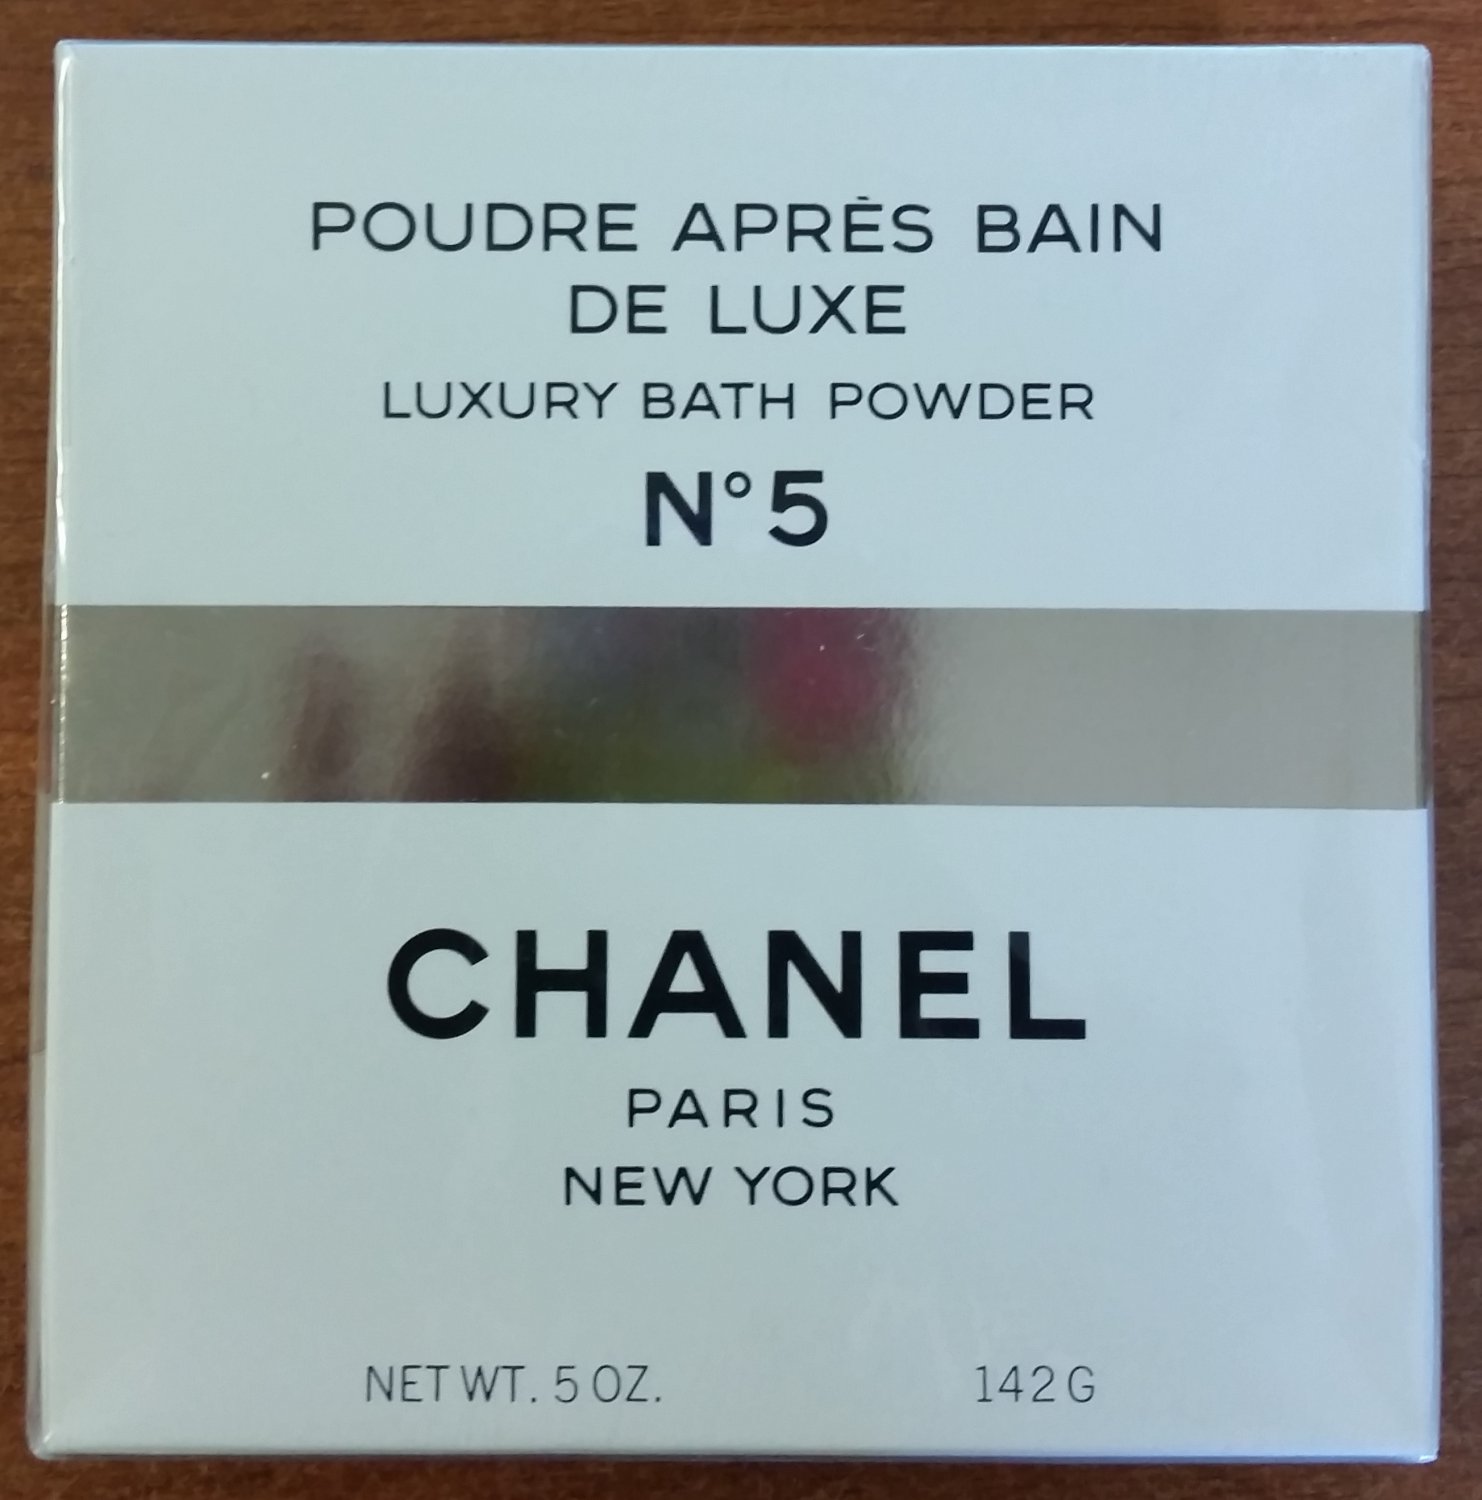 CHANEL No 5 Poudre Apres Bain De Luxe Luxury Bath Powder - 100% Authentic -  5 OZ./142G - SEALED!